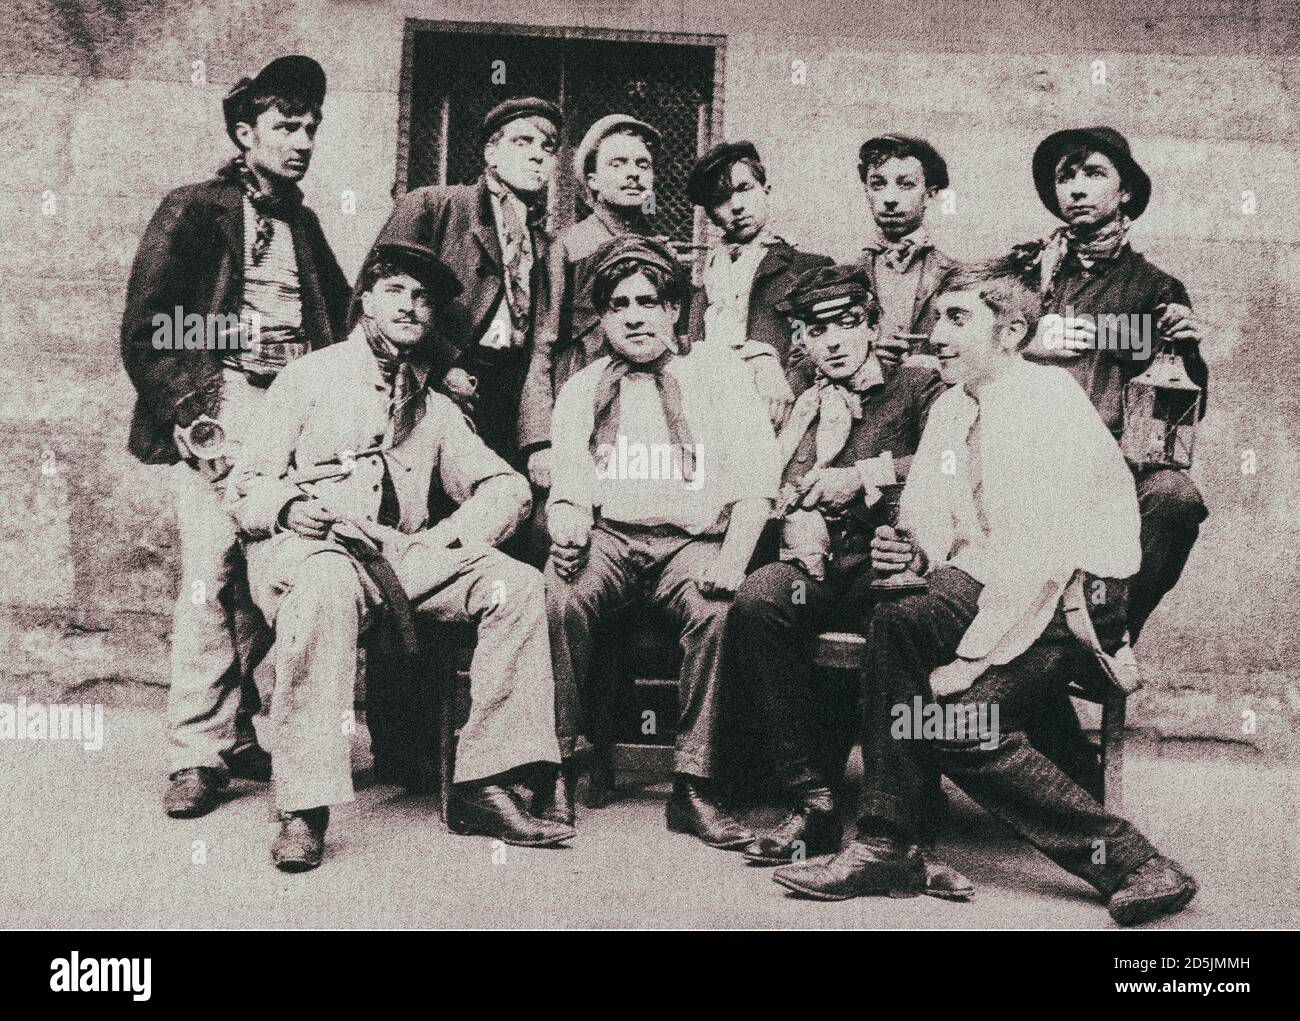 Foto retro de la Belle Epoque. Una pandilla de apaches. Les Apaches fue una Belle Epoque parisina criminal violento subcultura del submundo de principios del siglo 20 Foto de stock